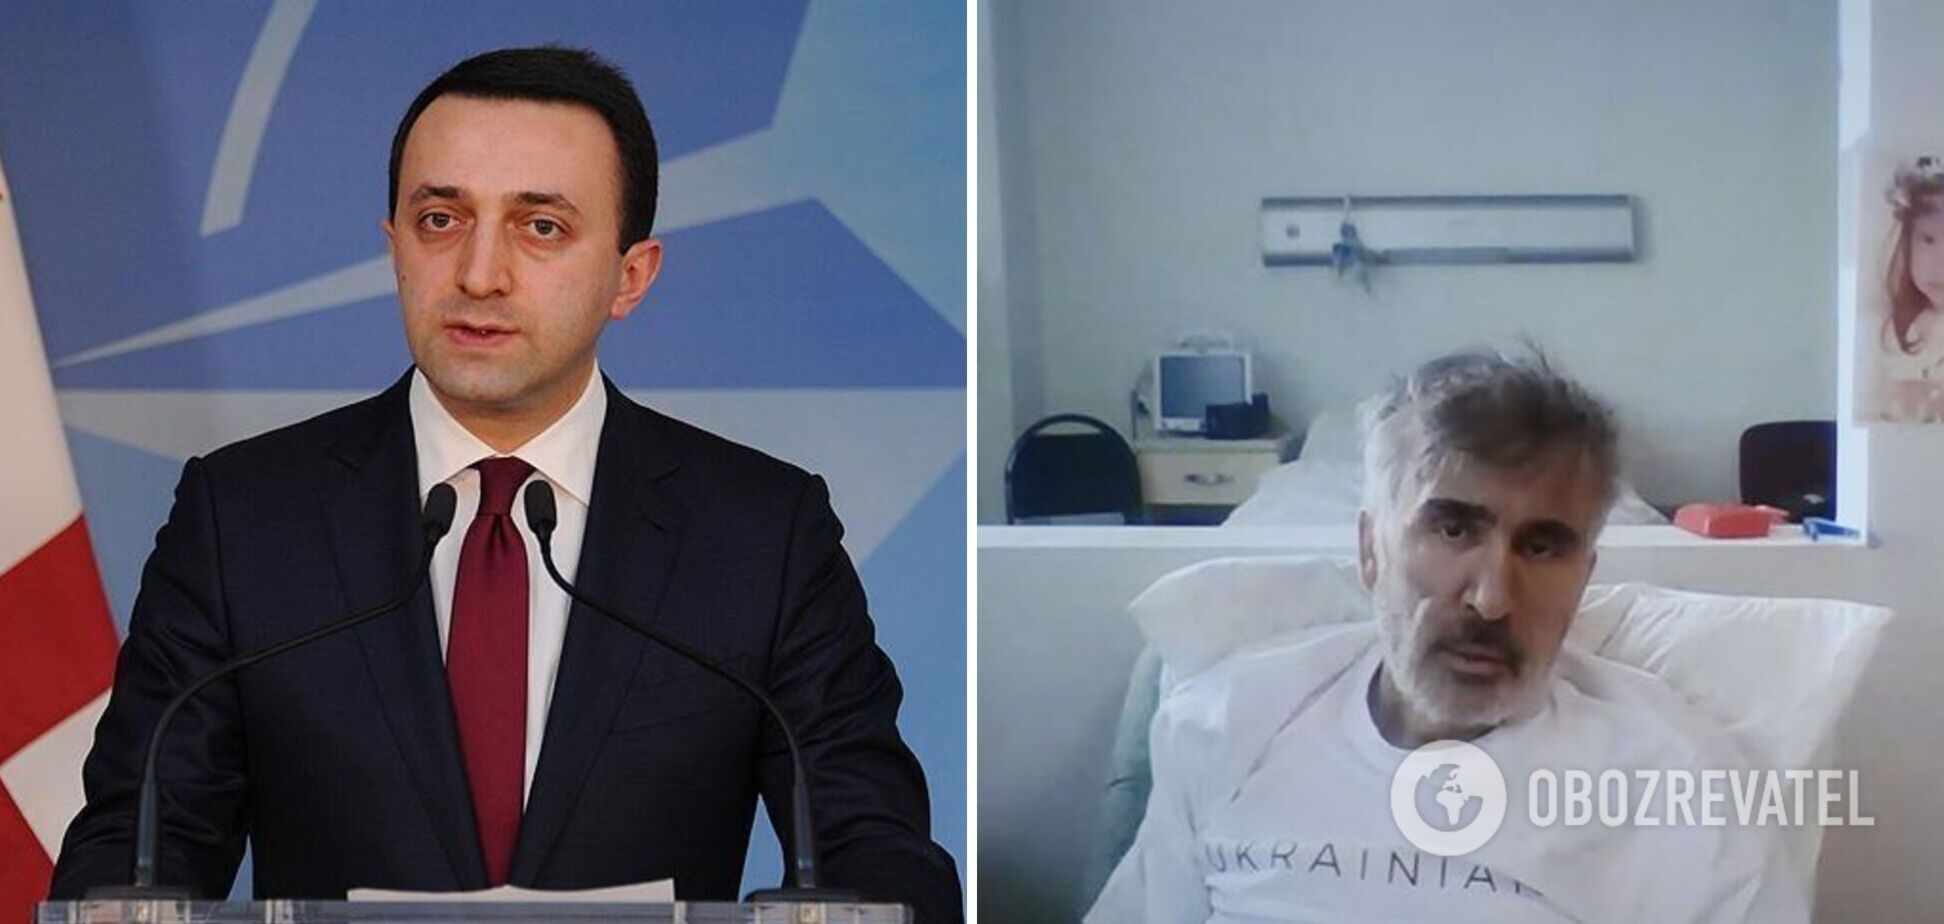 Прем’єр Грузії цинічно прокоментував стан здоров’я Саакашвілі: хороший актор  